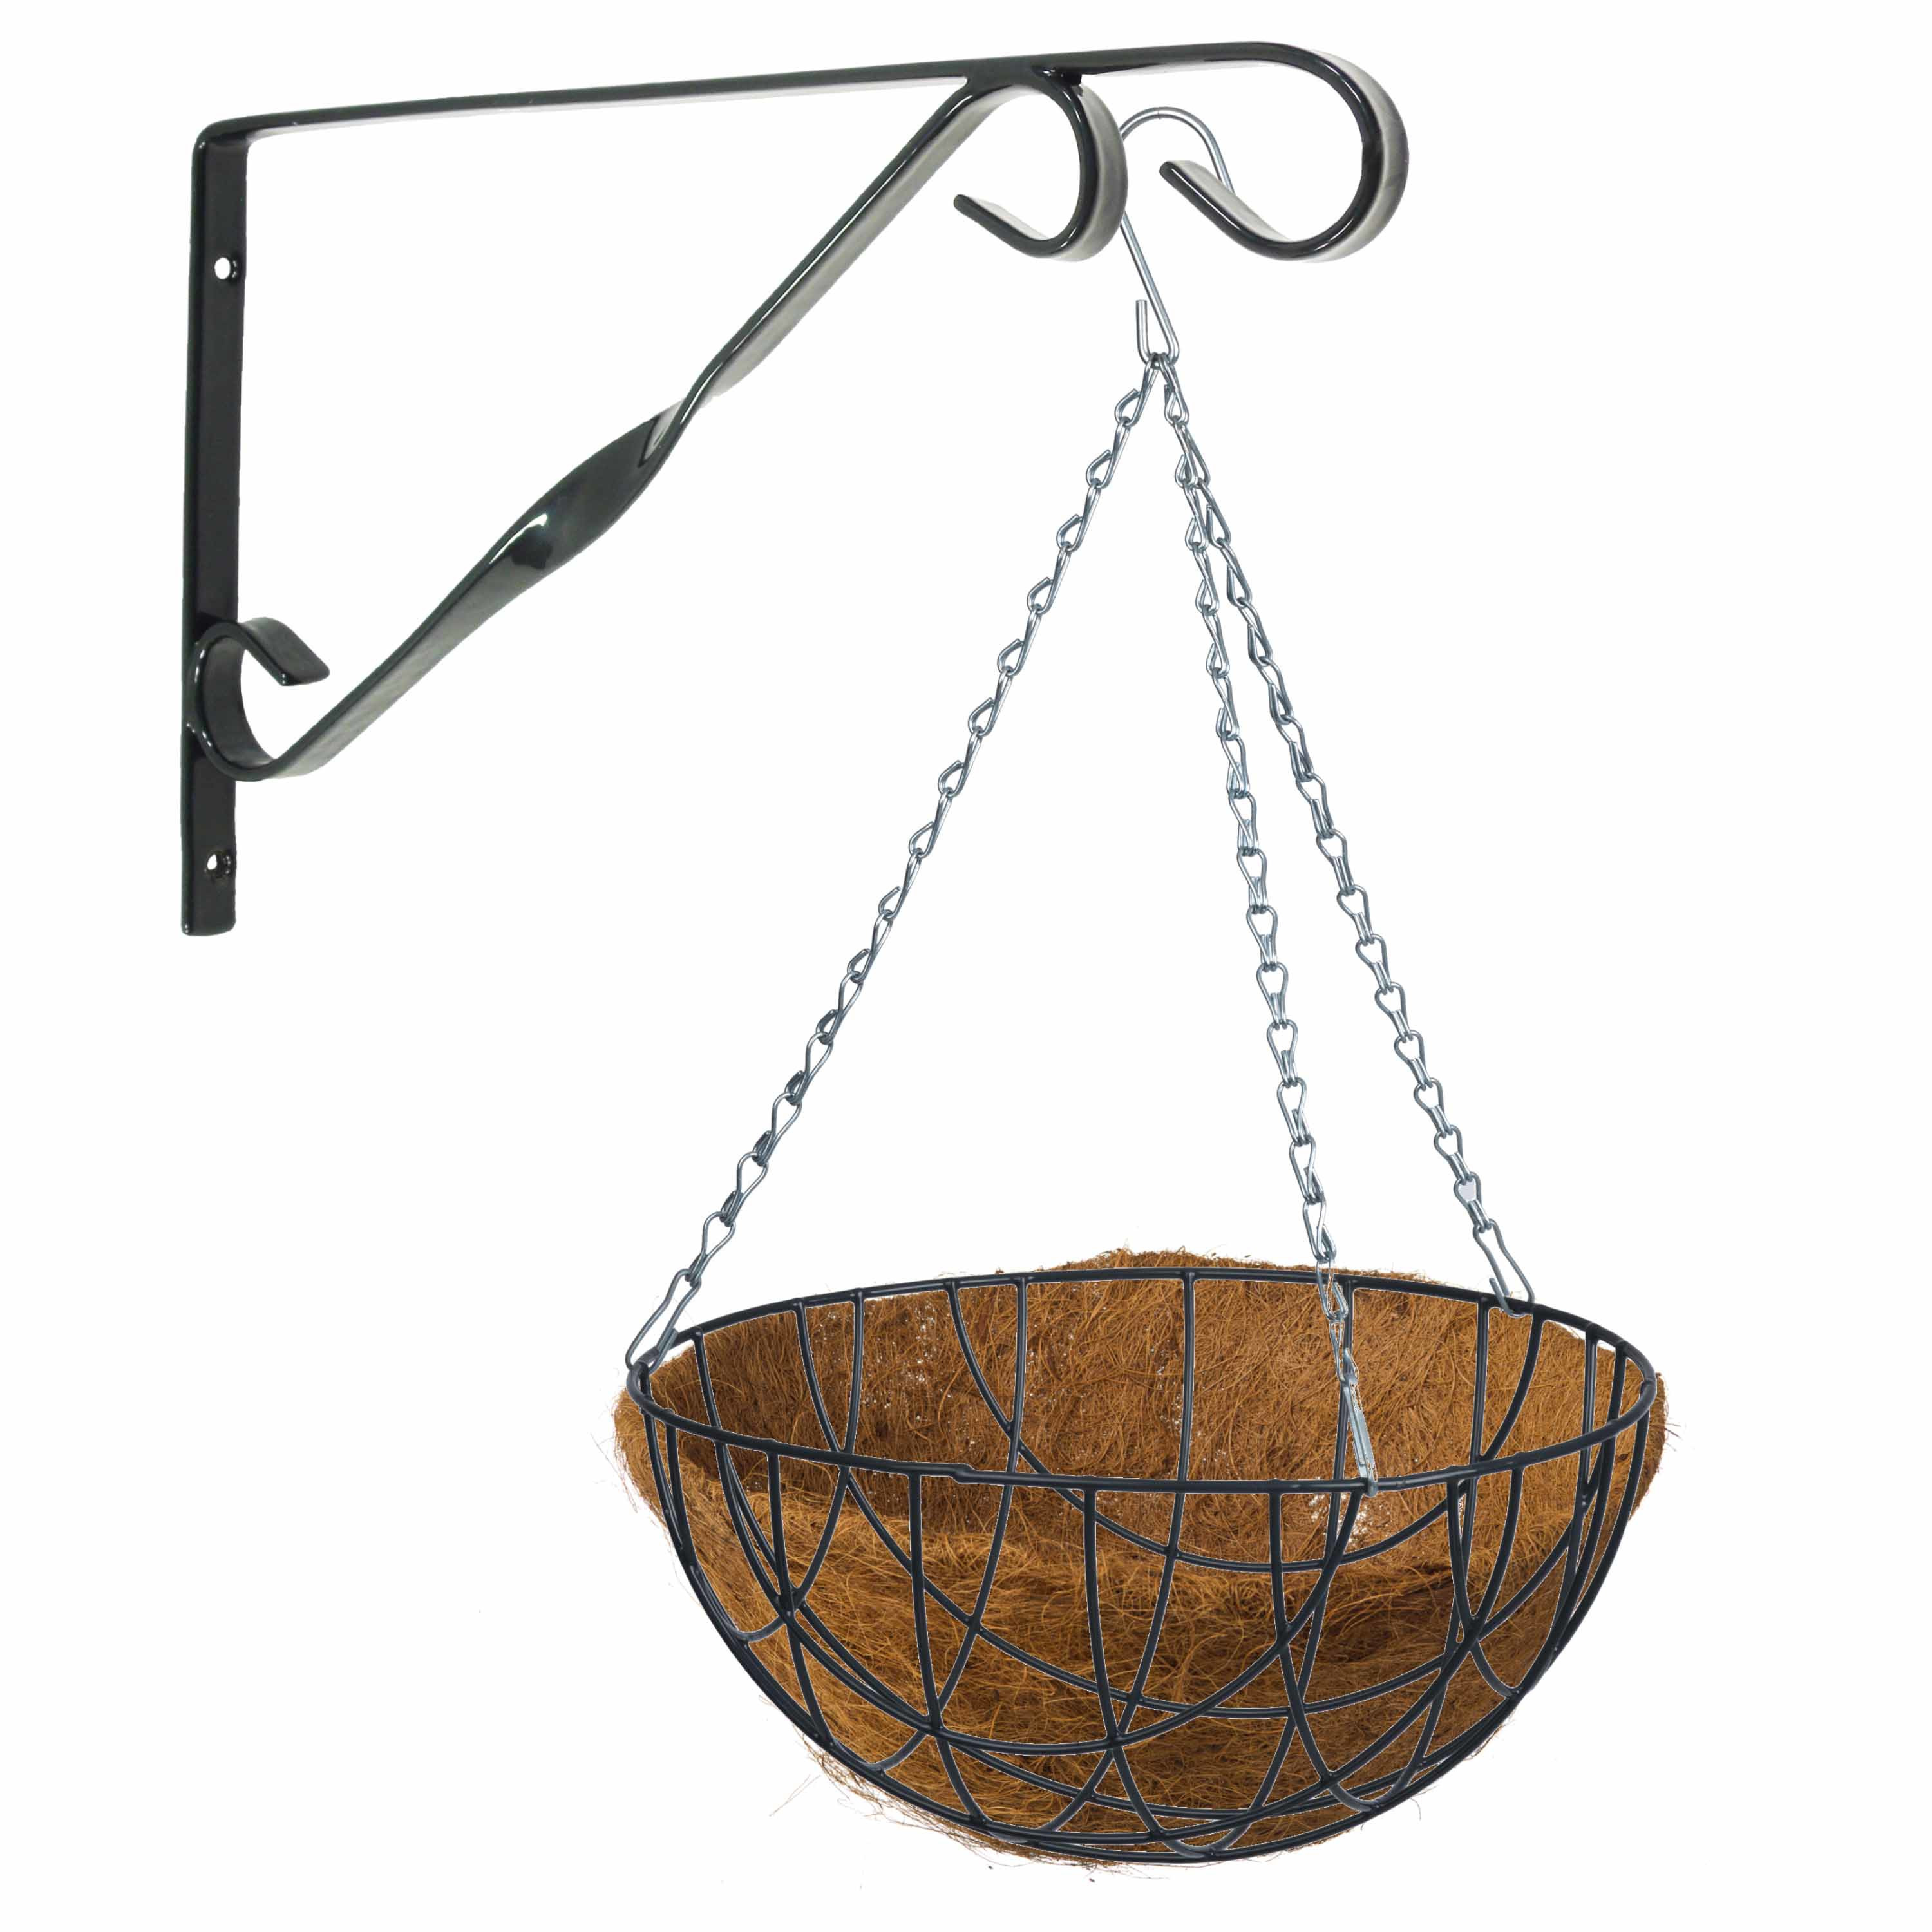 Hanging basket 40 cm met klassieke muurhaak zwart en kokos inlegvel metaal complete hangmand set